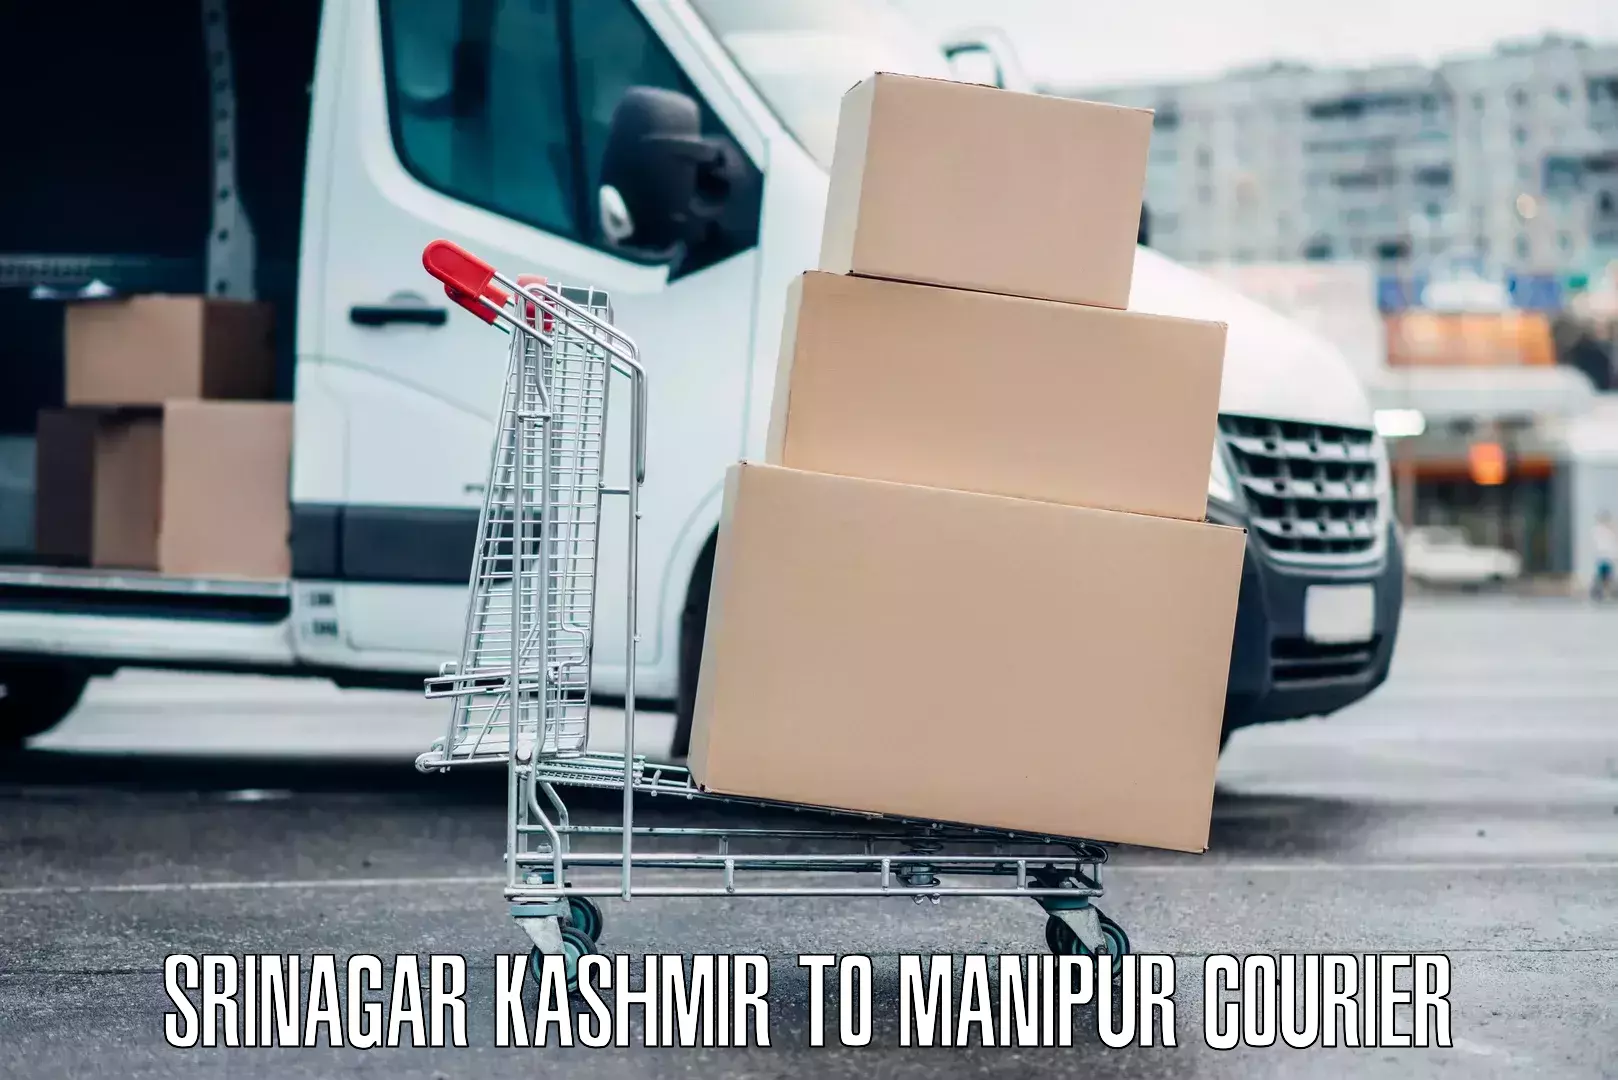 Luggage shipment specialists Srinagar Kashmir to Manipur